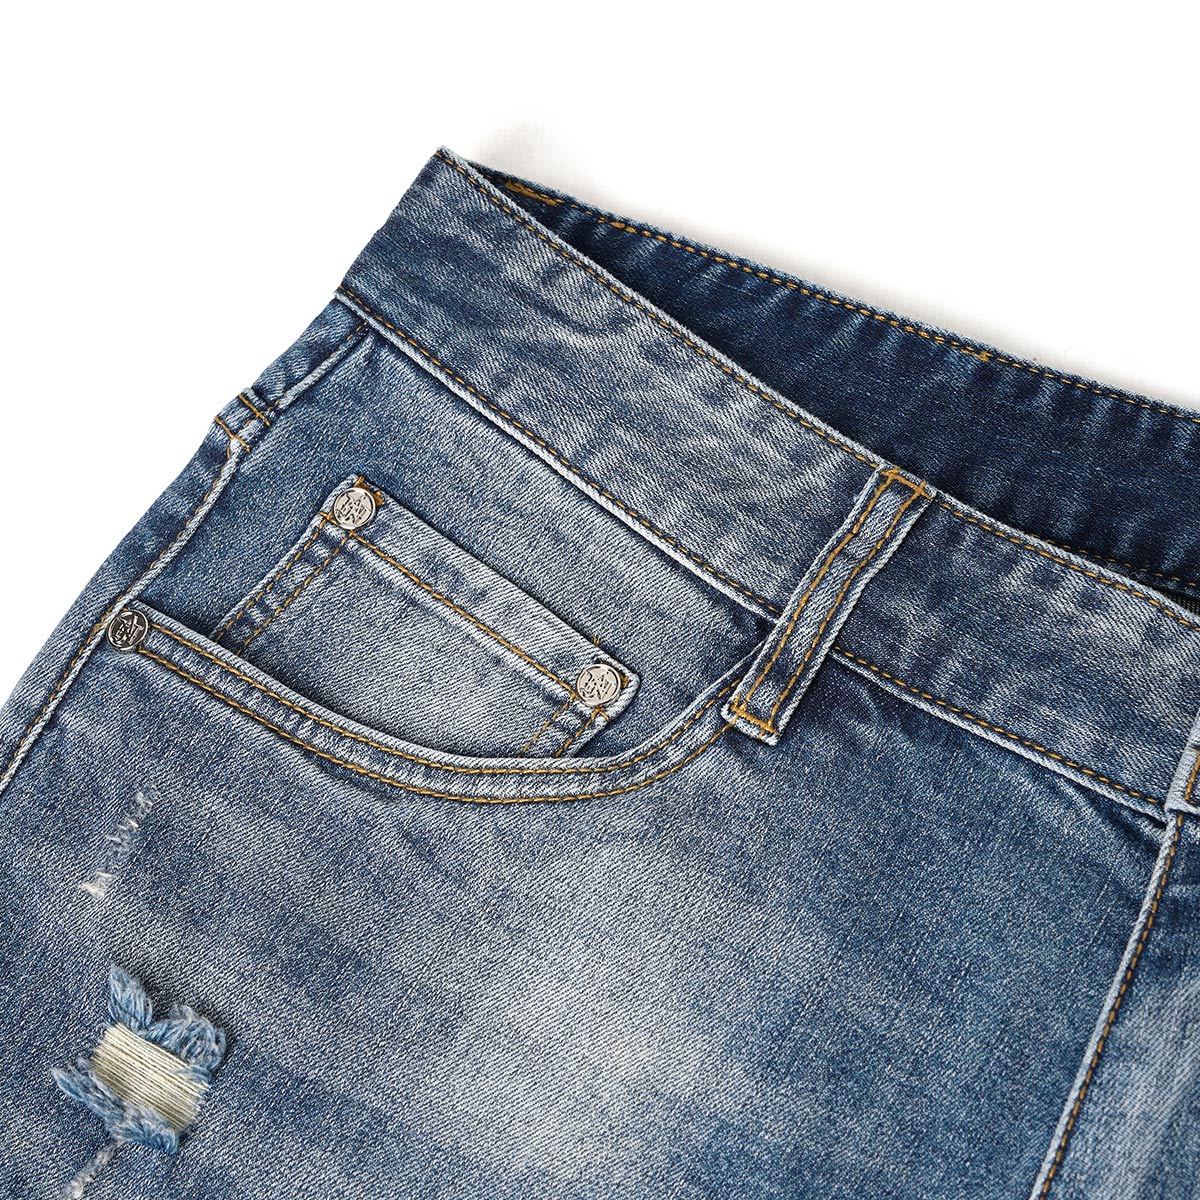 安杰安尼男装春夏季专柜新款浅蓝色修身版男士牛仔裤AJ842048462